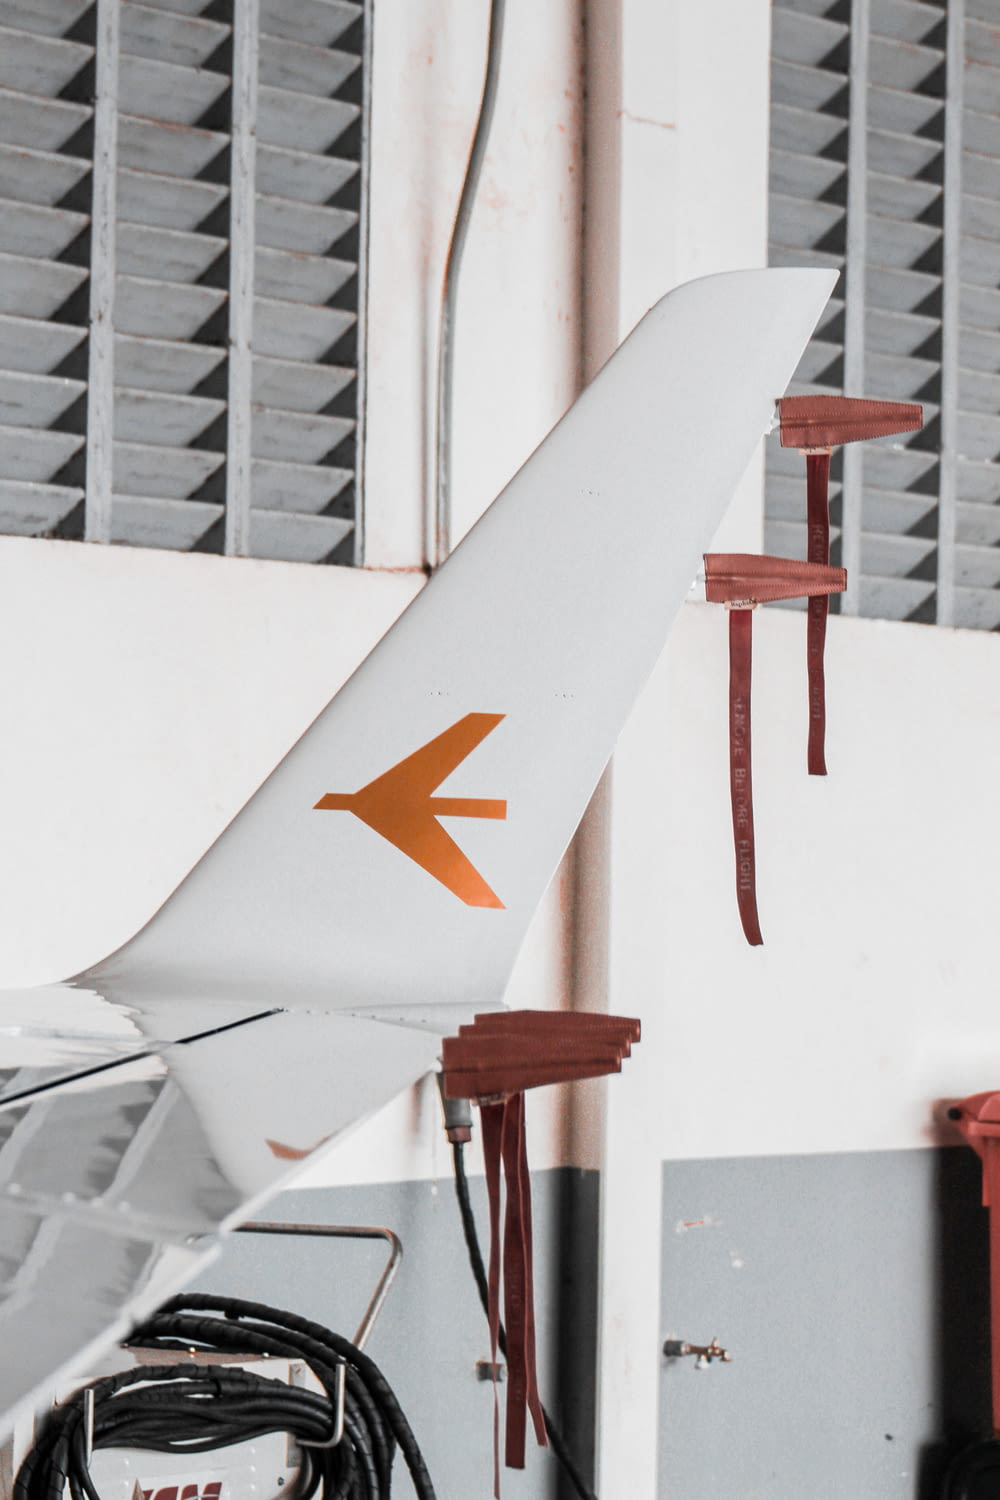 Un avión blanco con una flecha naranja pintada